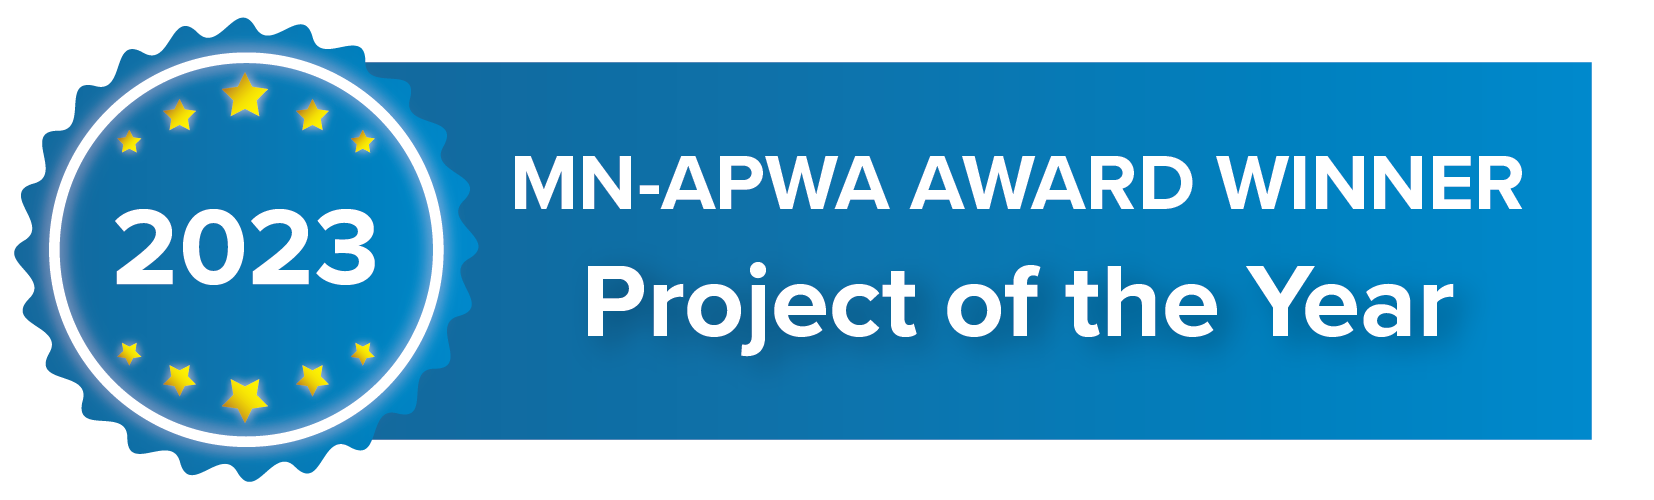 MN-APWA Project of the Year Award